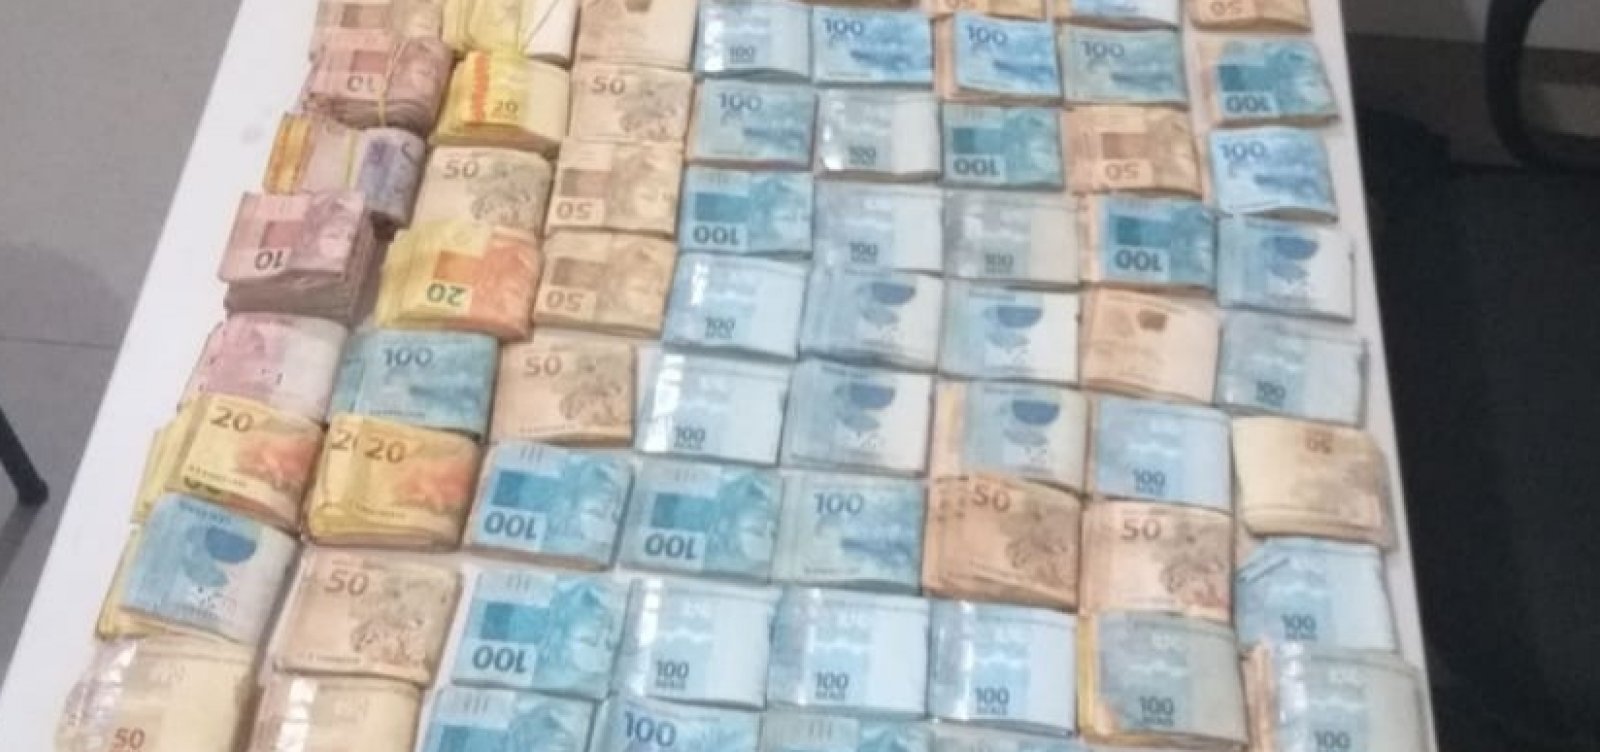 Homem é flagrado em rodovia com R$ 110 mil e diz não saber a procedência do dinheiro